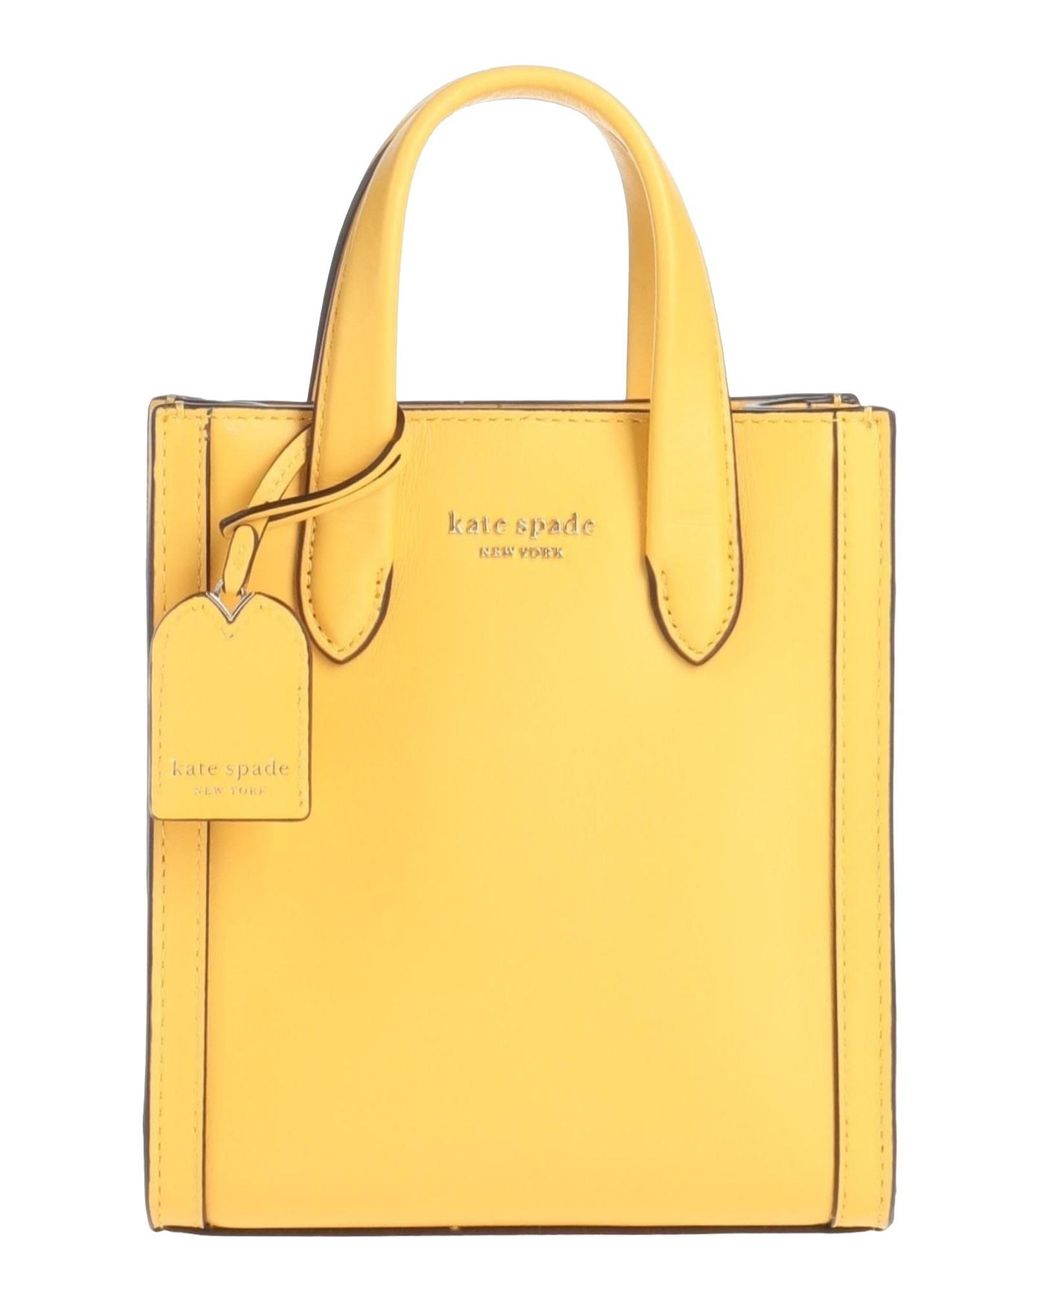 Lavie Mustard Bags - Buy Lavie Mustard Bags online in India